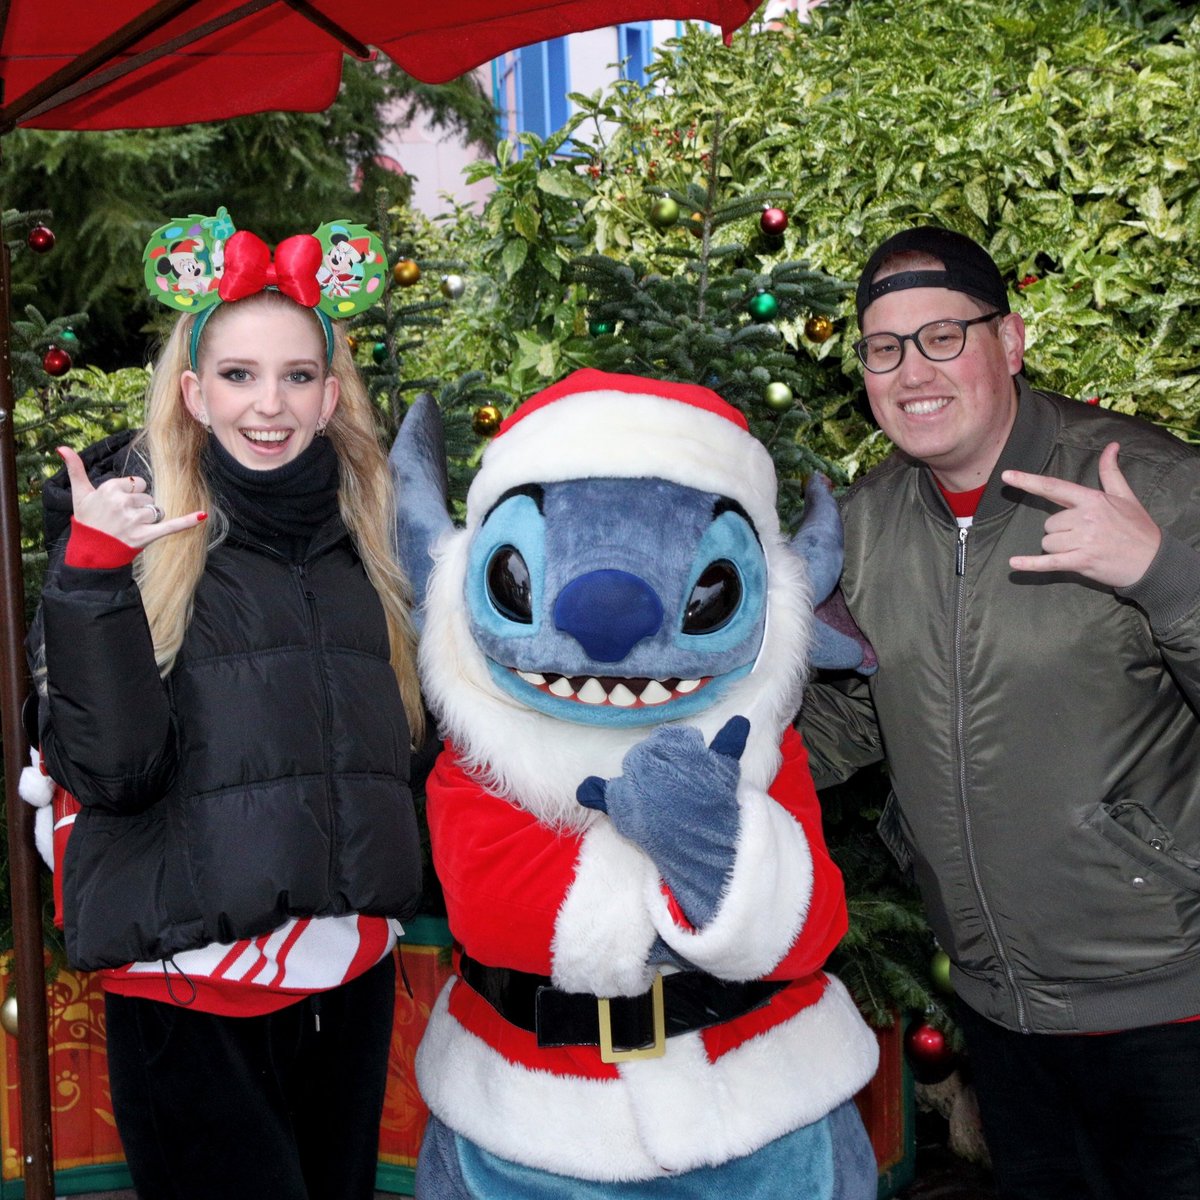 Vrolijk kerstmis vanuit Disneyland met de wifey, geniet ervan allemaal! ❤️🎄